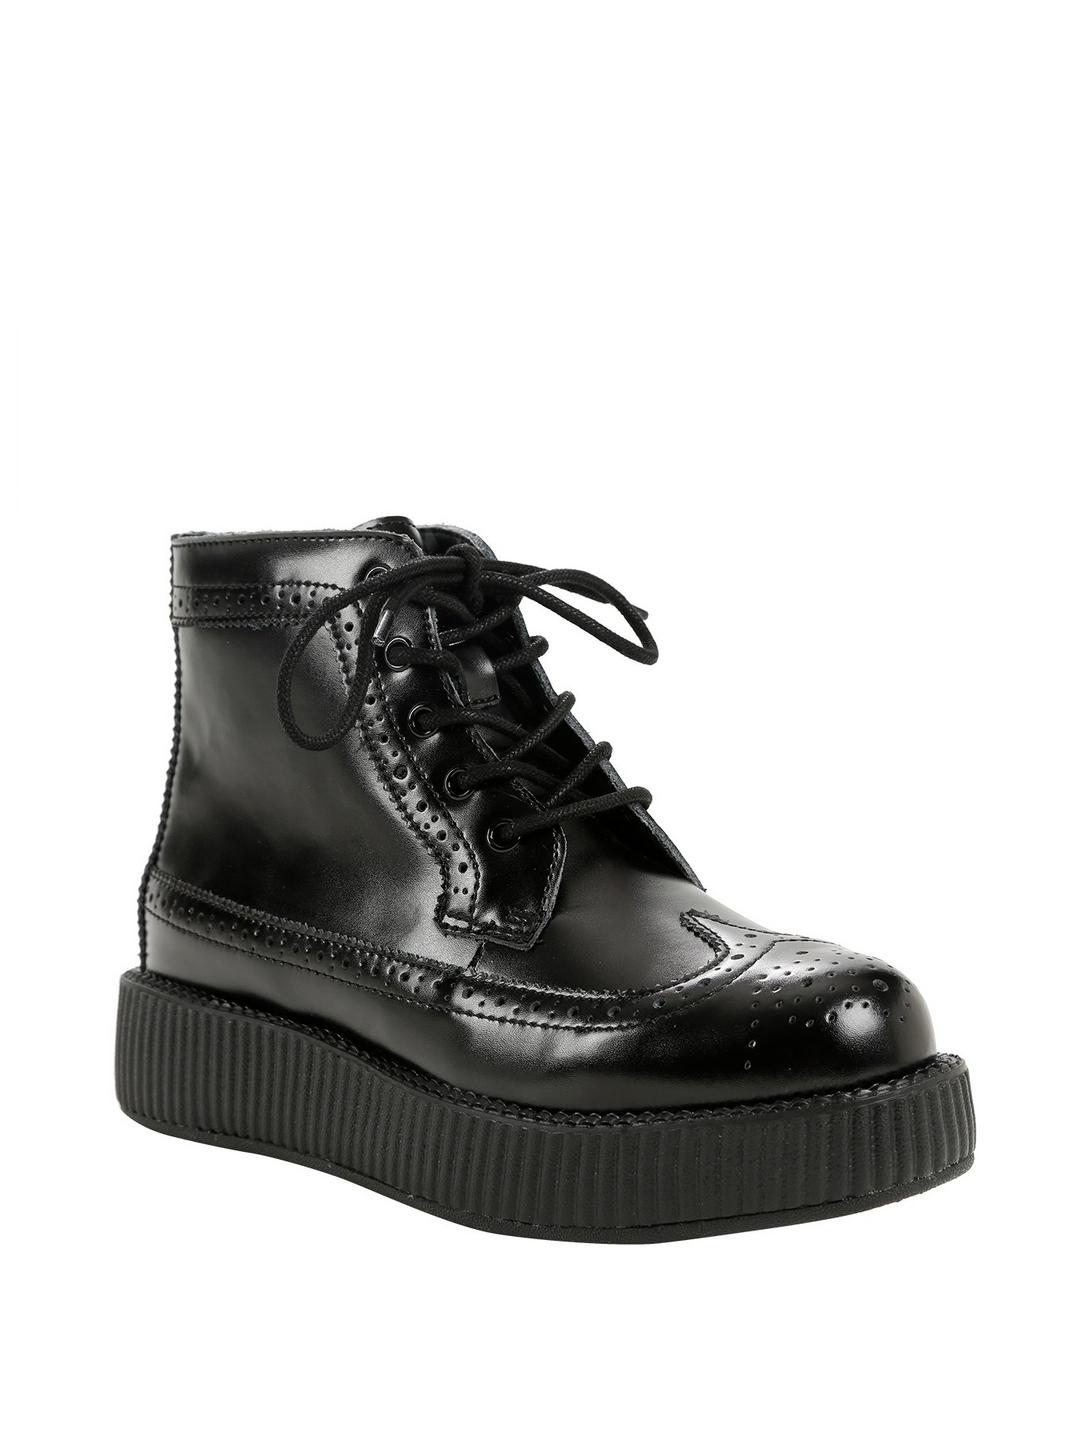 T.U.K Black Wingtip Leather Boot, BLACK, hi-res